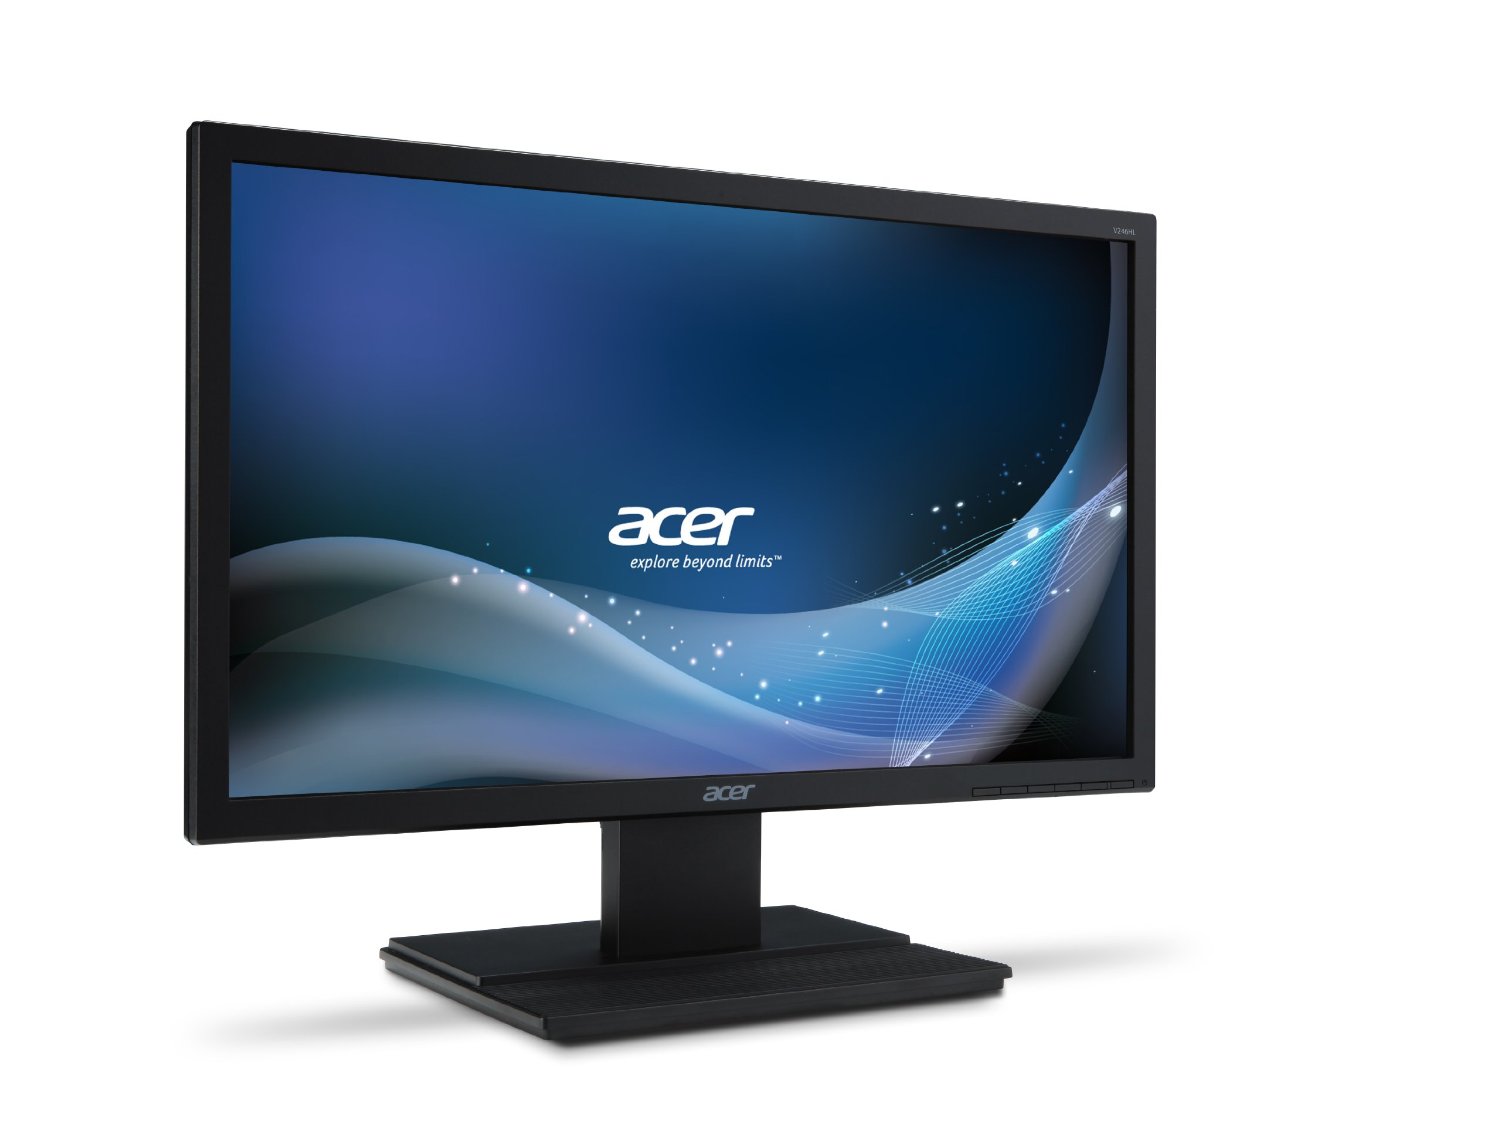 Acer Professional V246HL